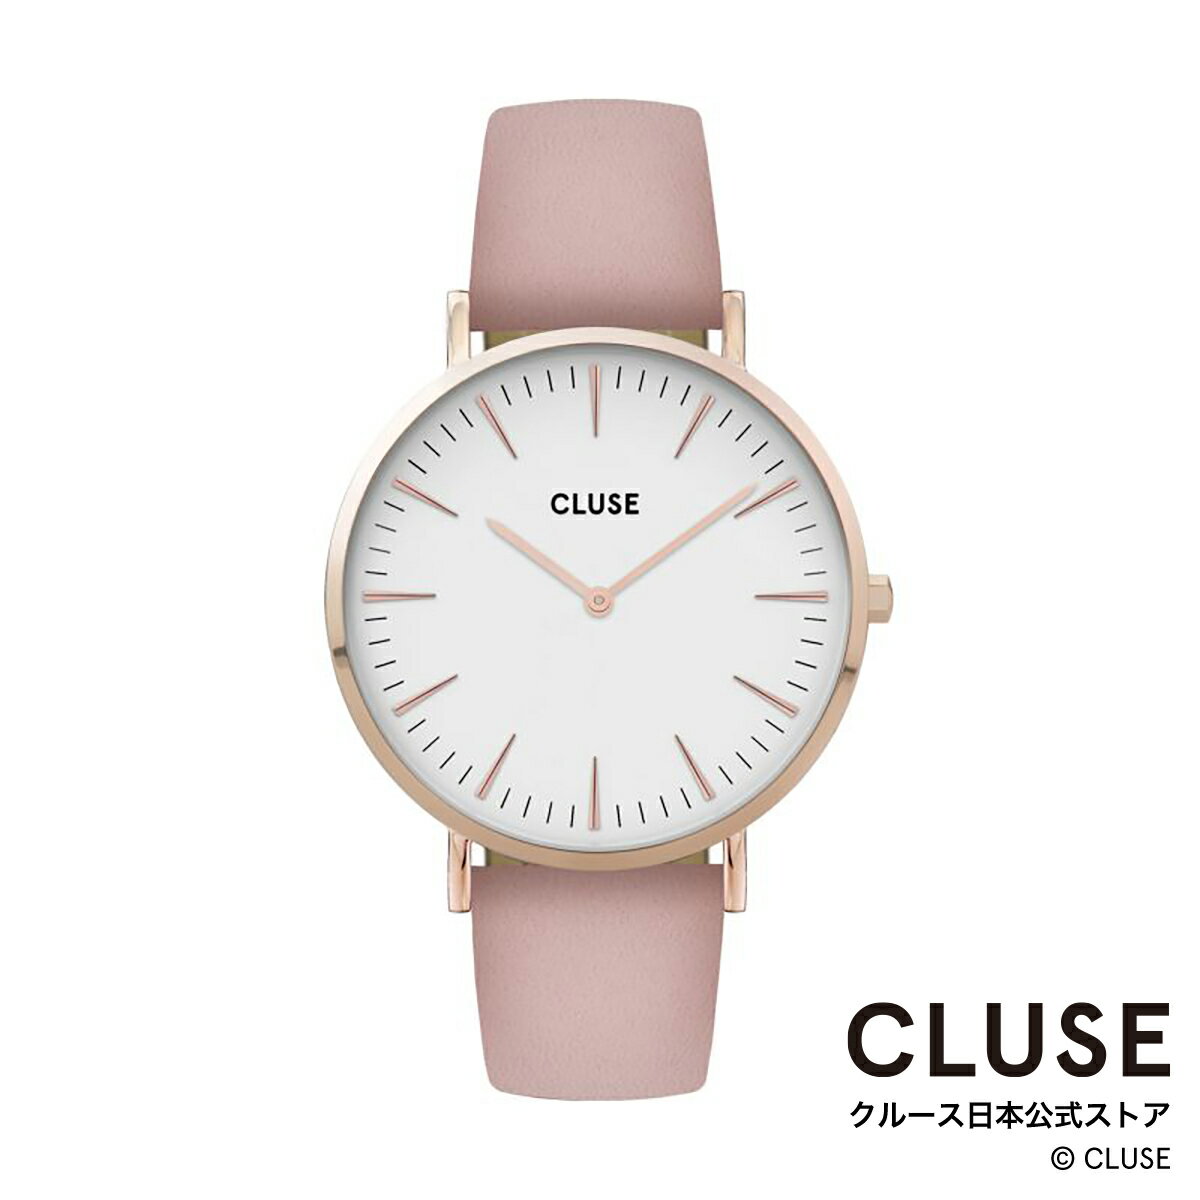 クルース CLUSE 日本公式ストア ボーホーシックレザー ローズゴールド ホワイト ピンク レディース 女性 腕時計 時計 防水 クォーツ